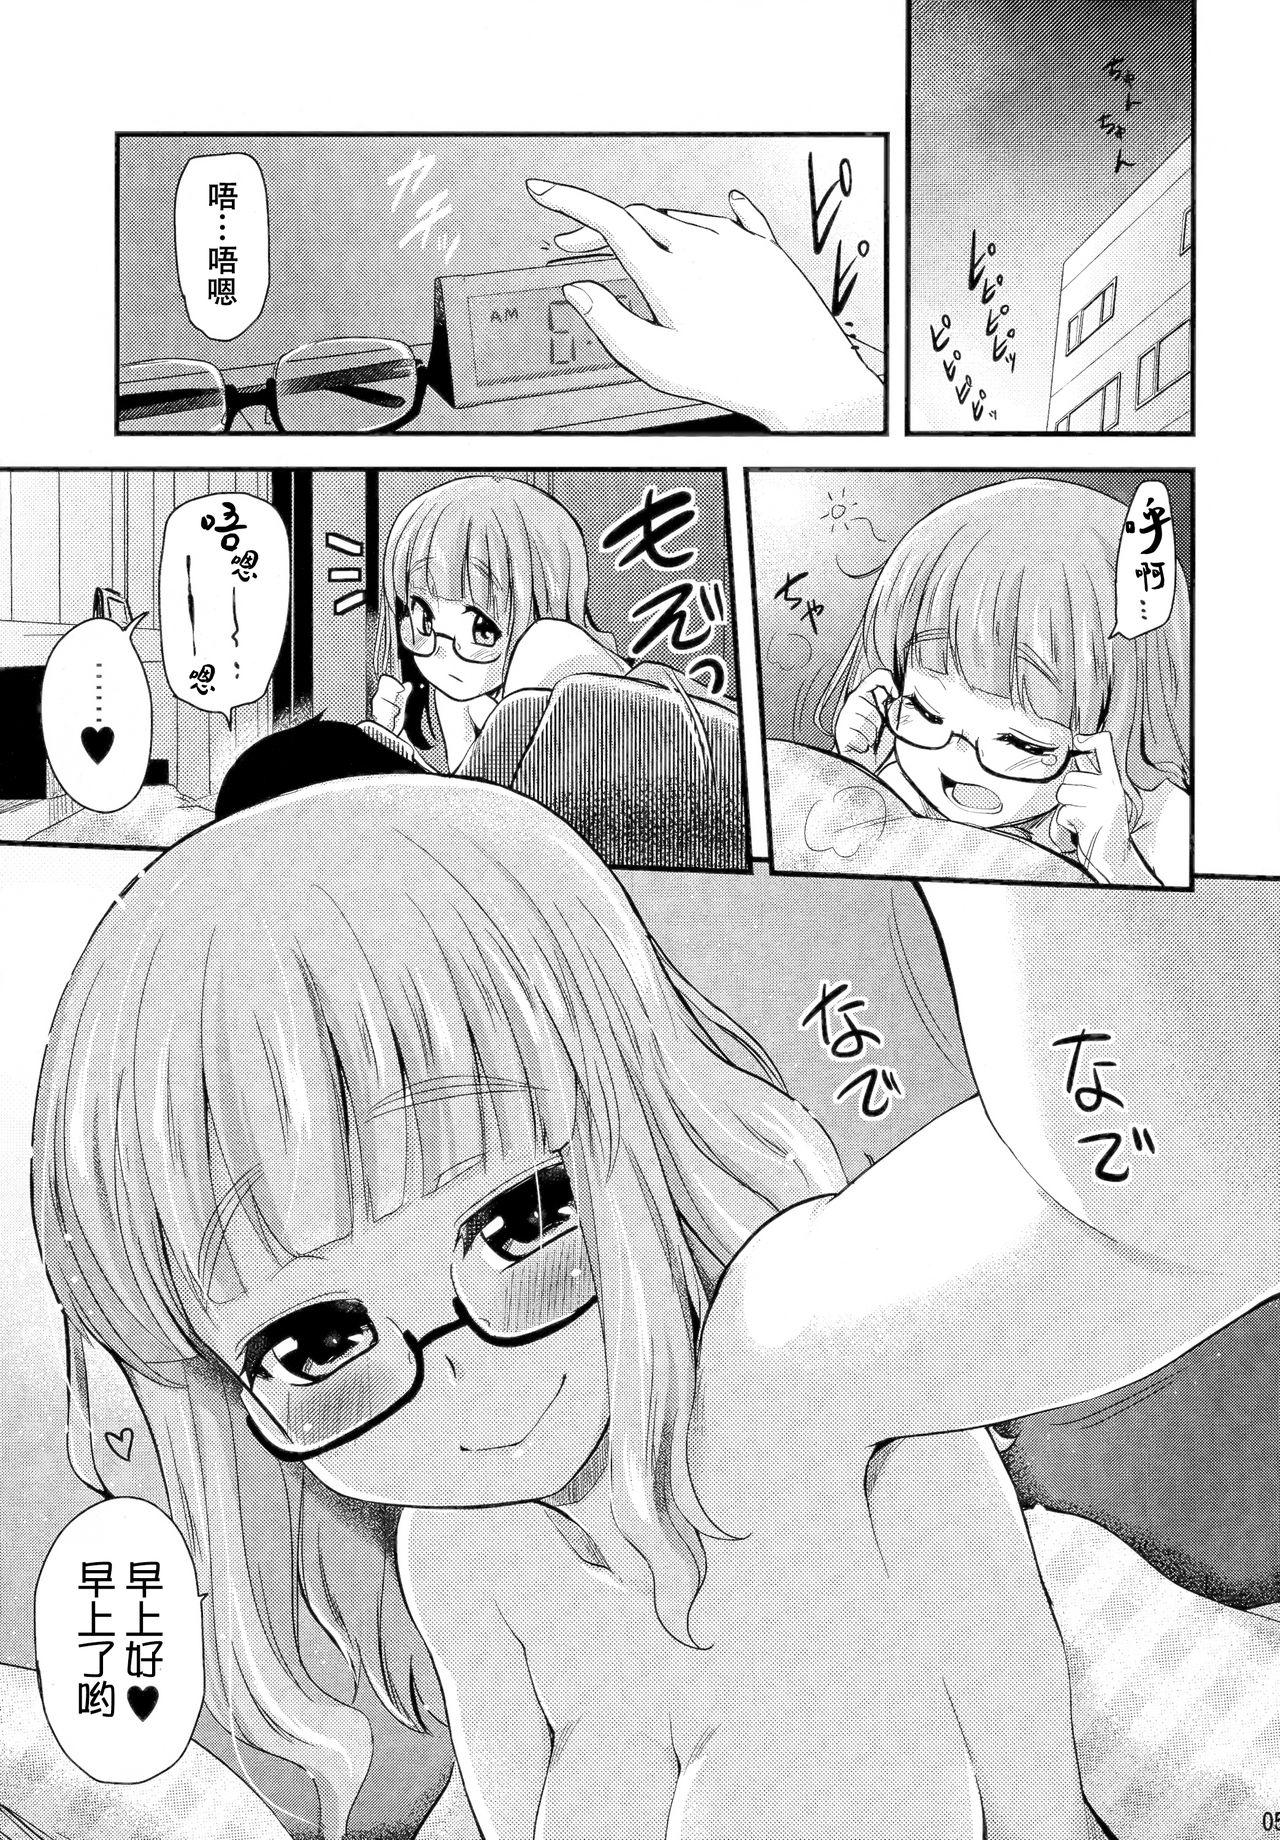 Follada Takebe Saori-chan toiu Kanojo ga "Ohayo" to Itte Kureru Hanashi. - Girls und panzer Cocks - Page 5